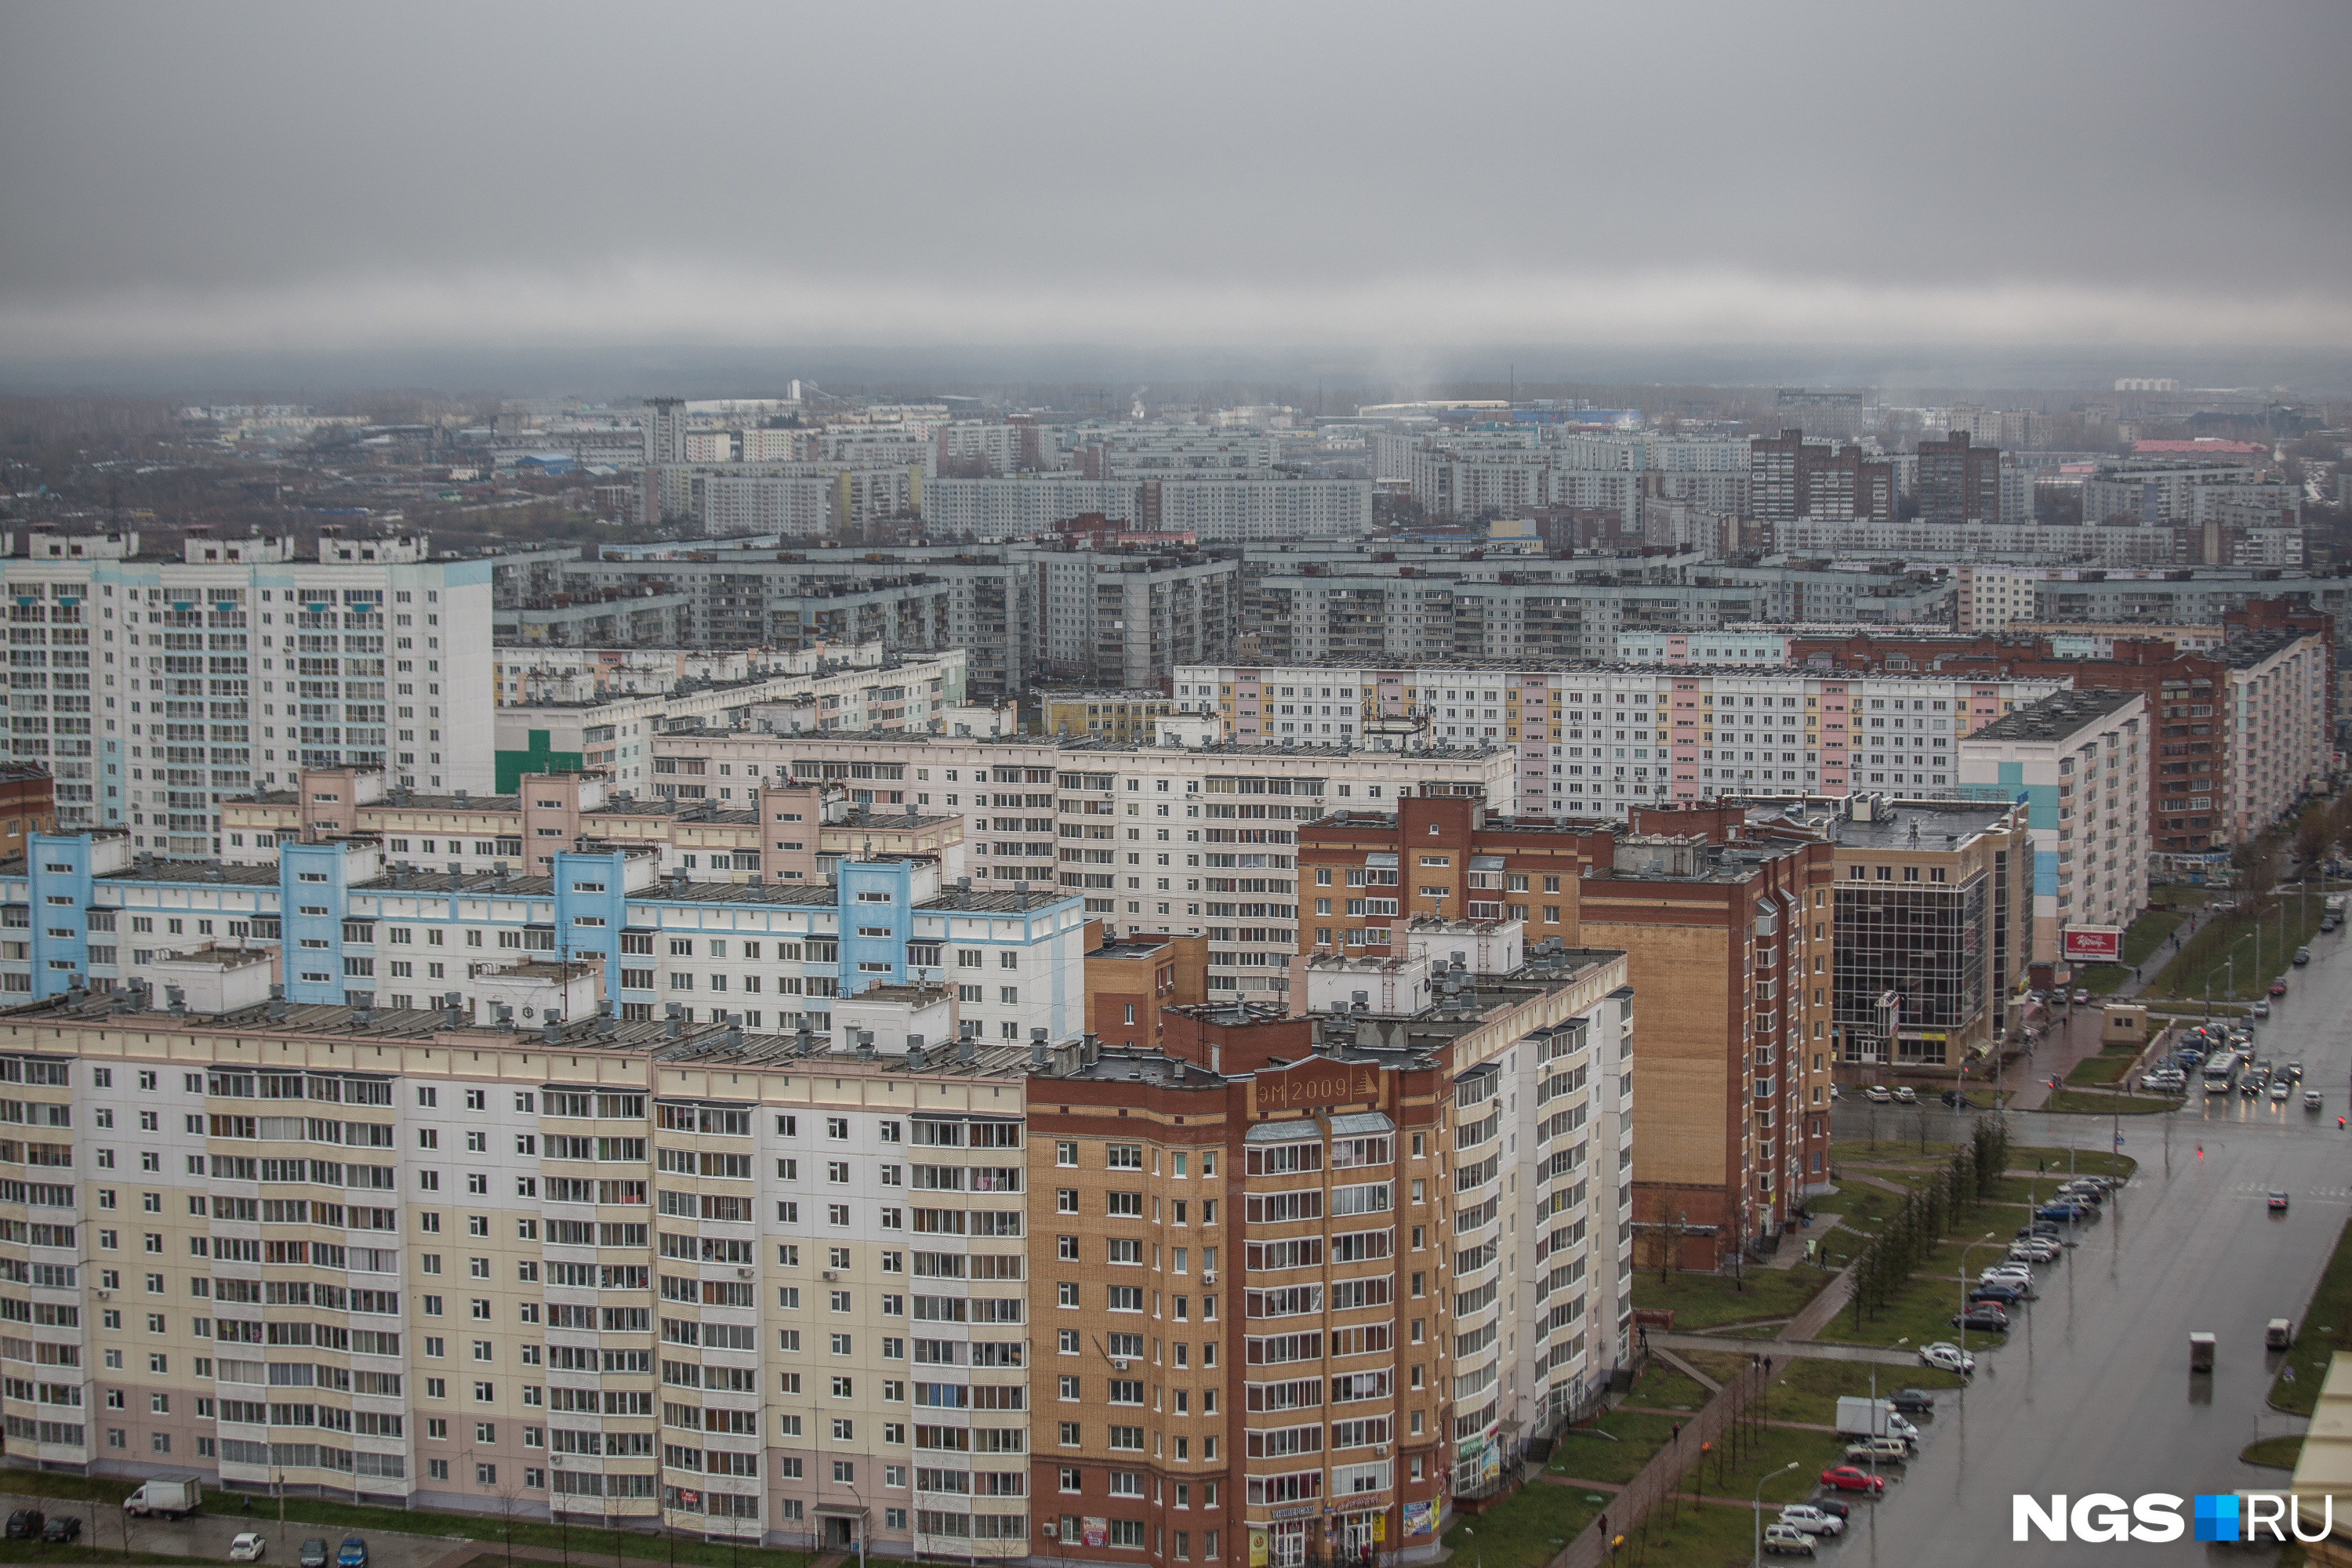 НГС недвижимость Новосибирск. Фото недвижимости Новосибирск сверху.